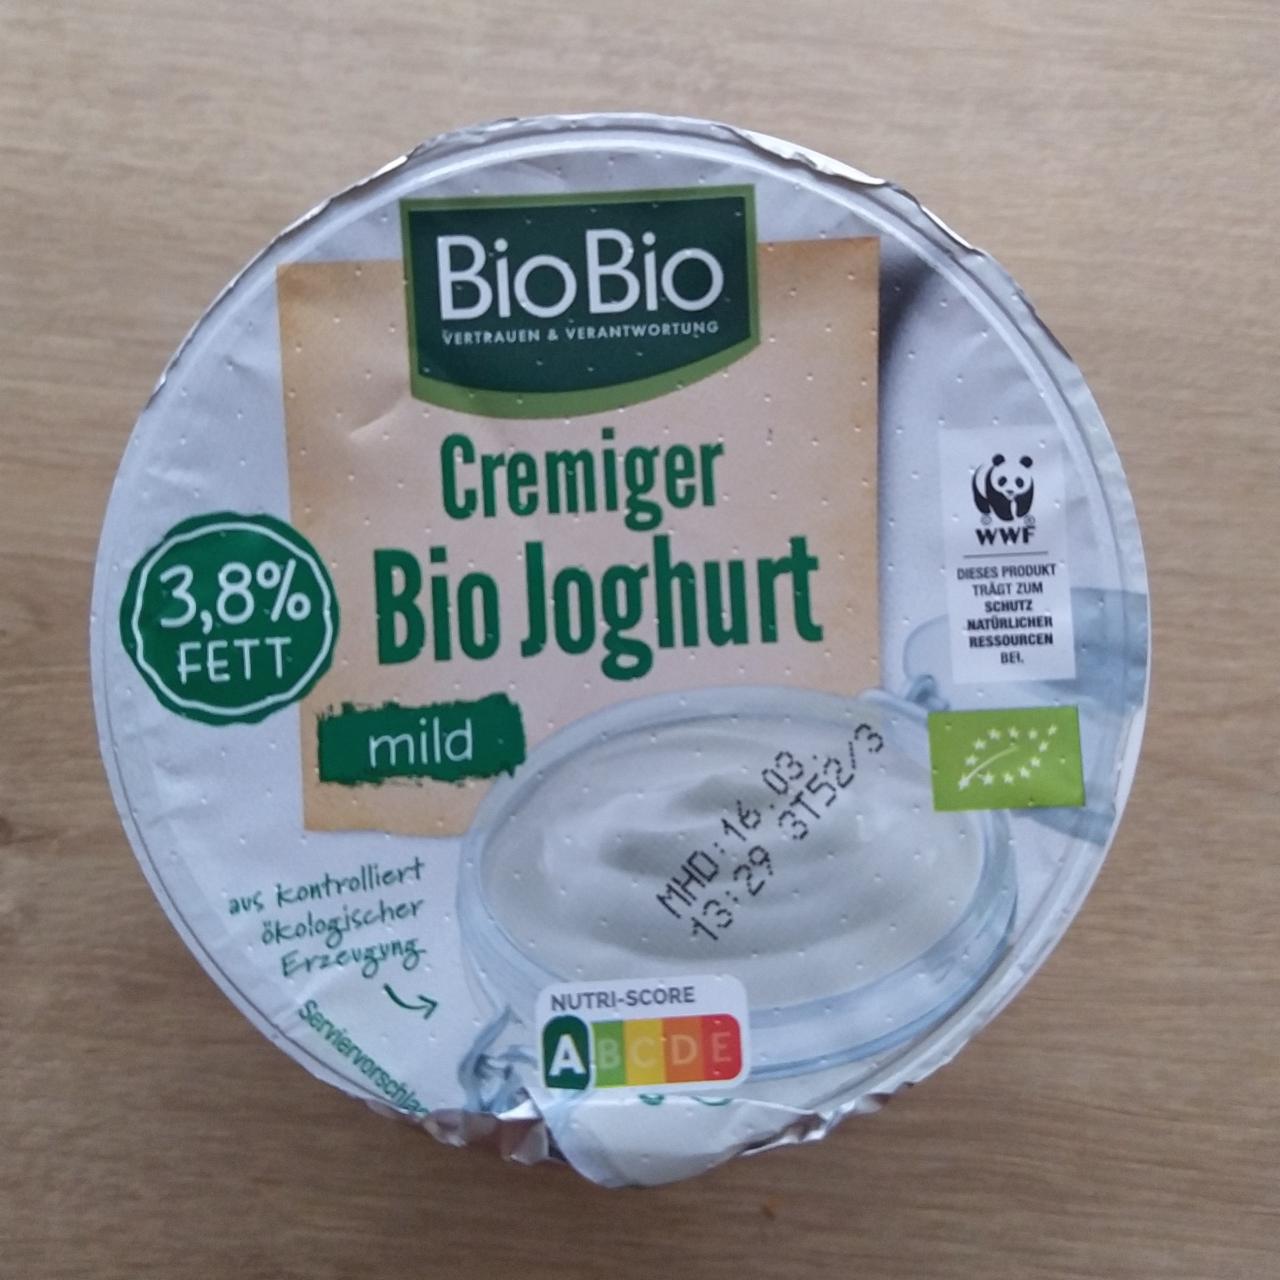 Fotografie - Cremiger Bio Joghurt mild 3,8% Fett Bio Bio